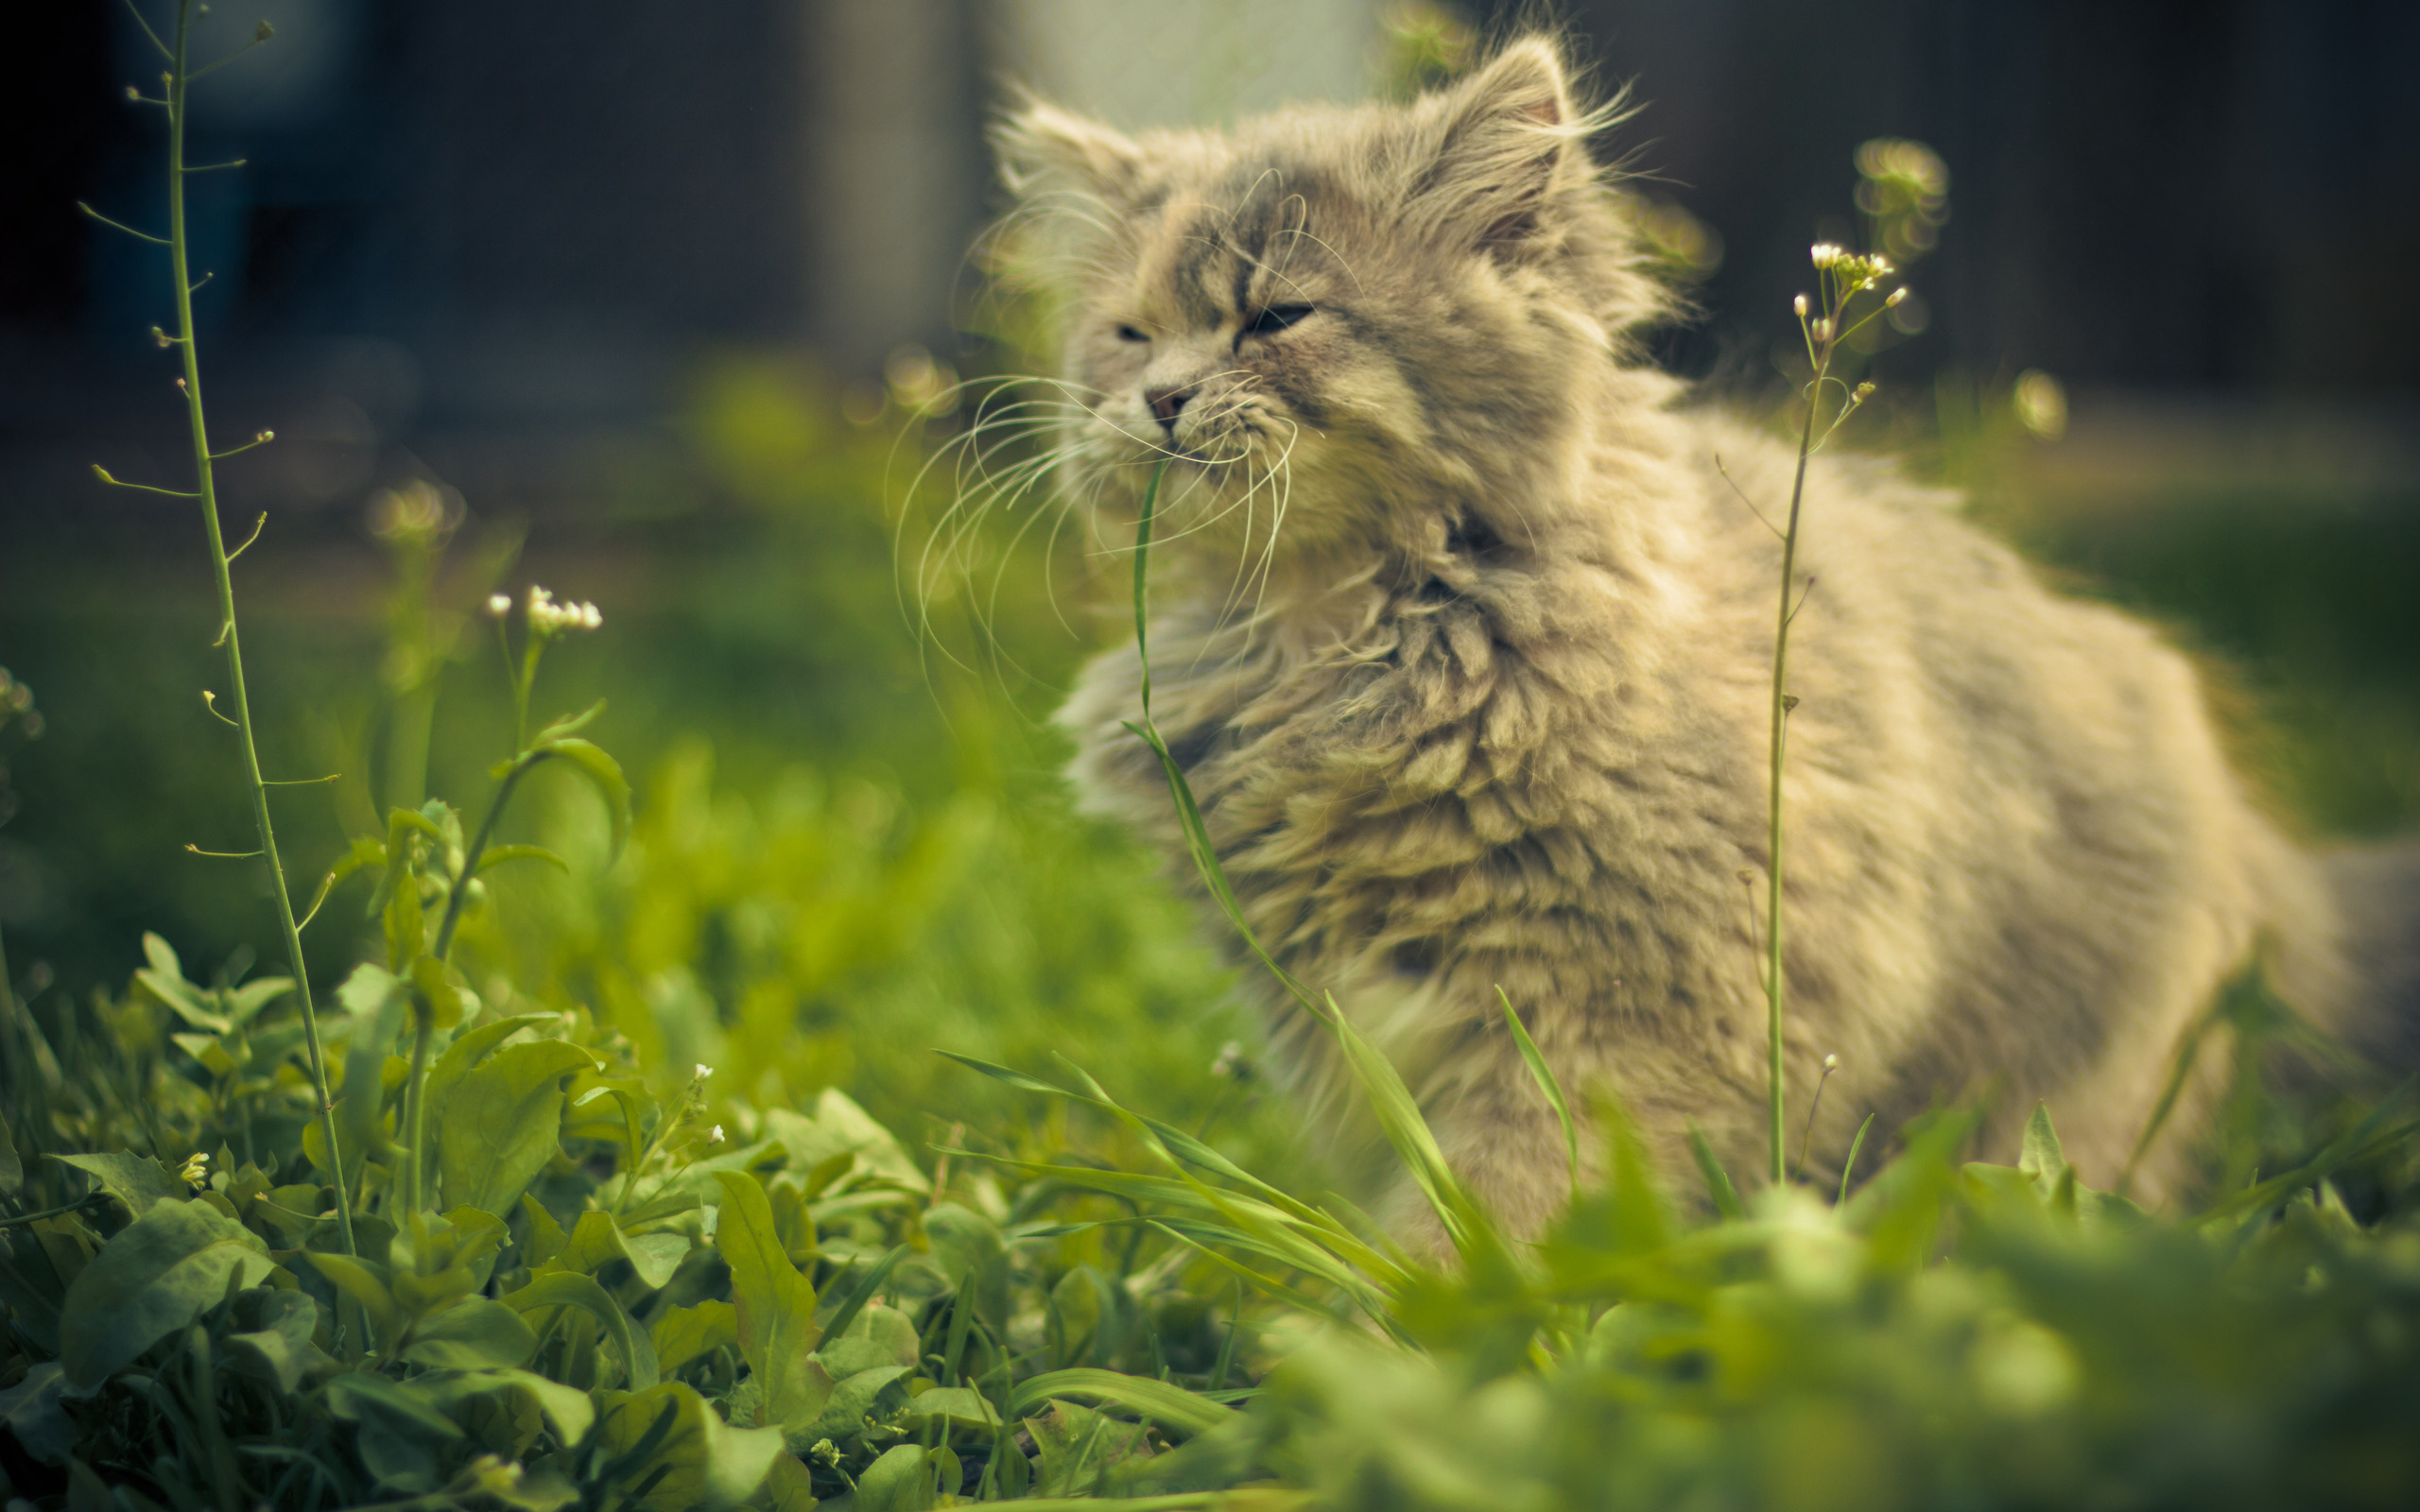 Пушистый кот в траве